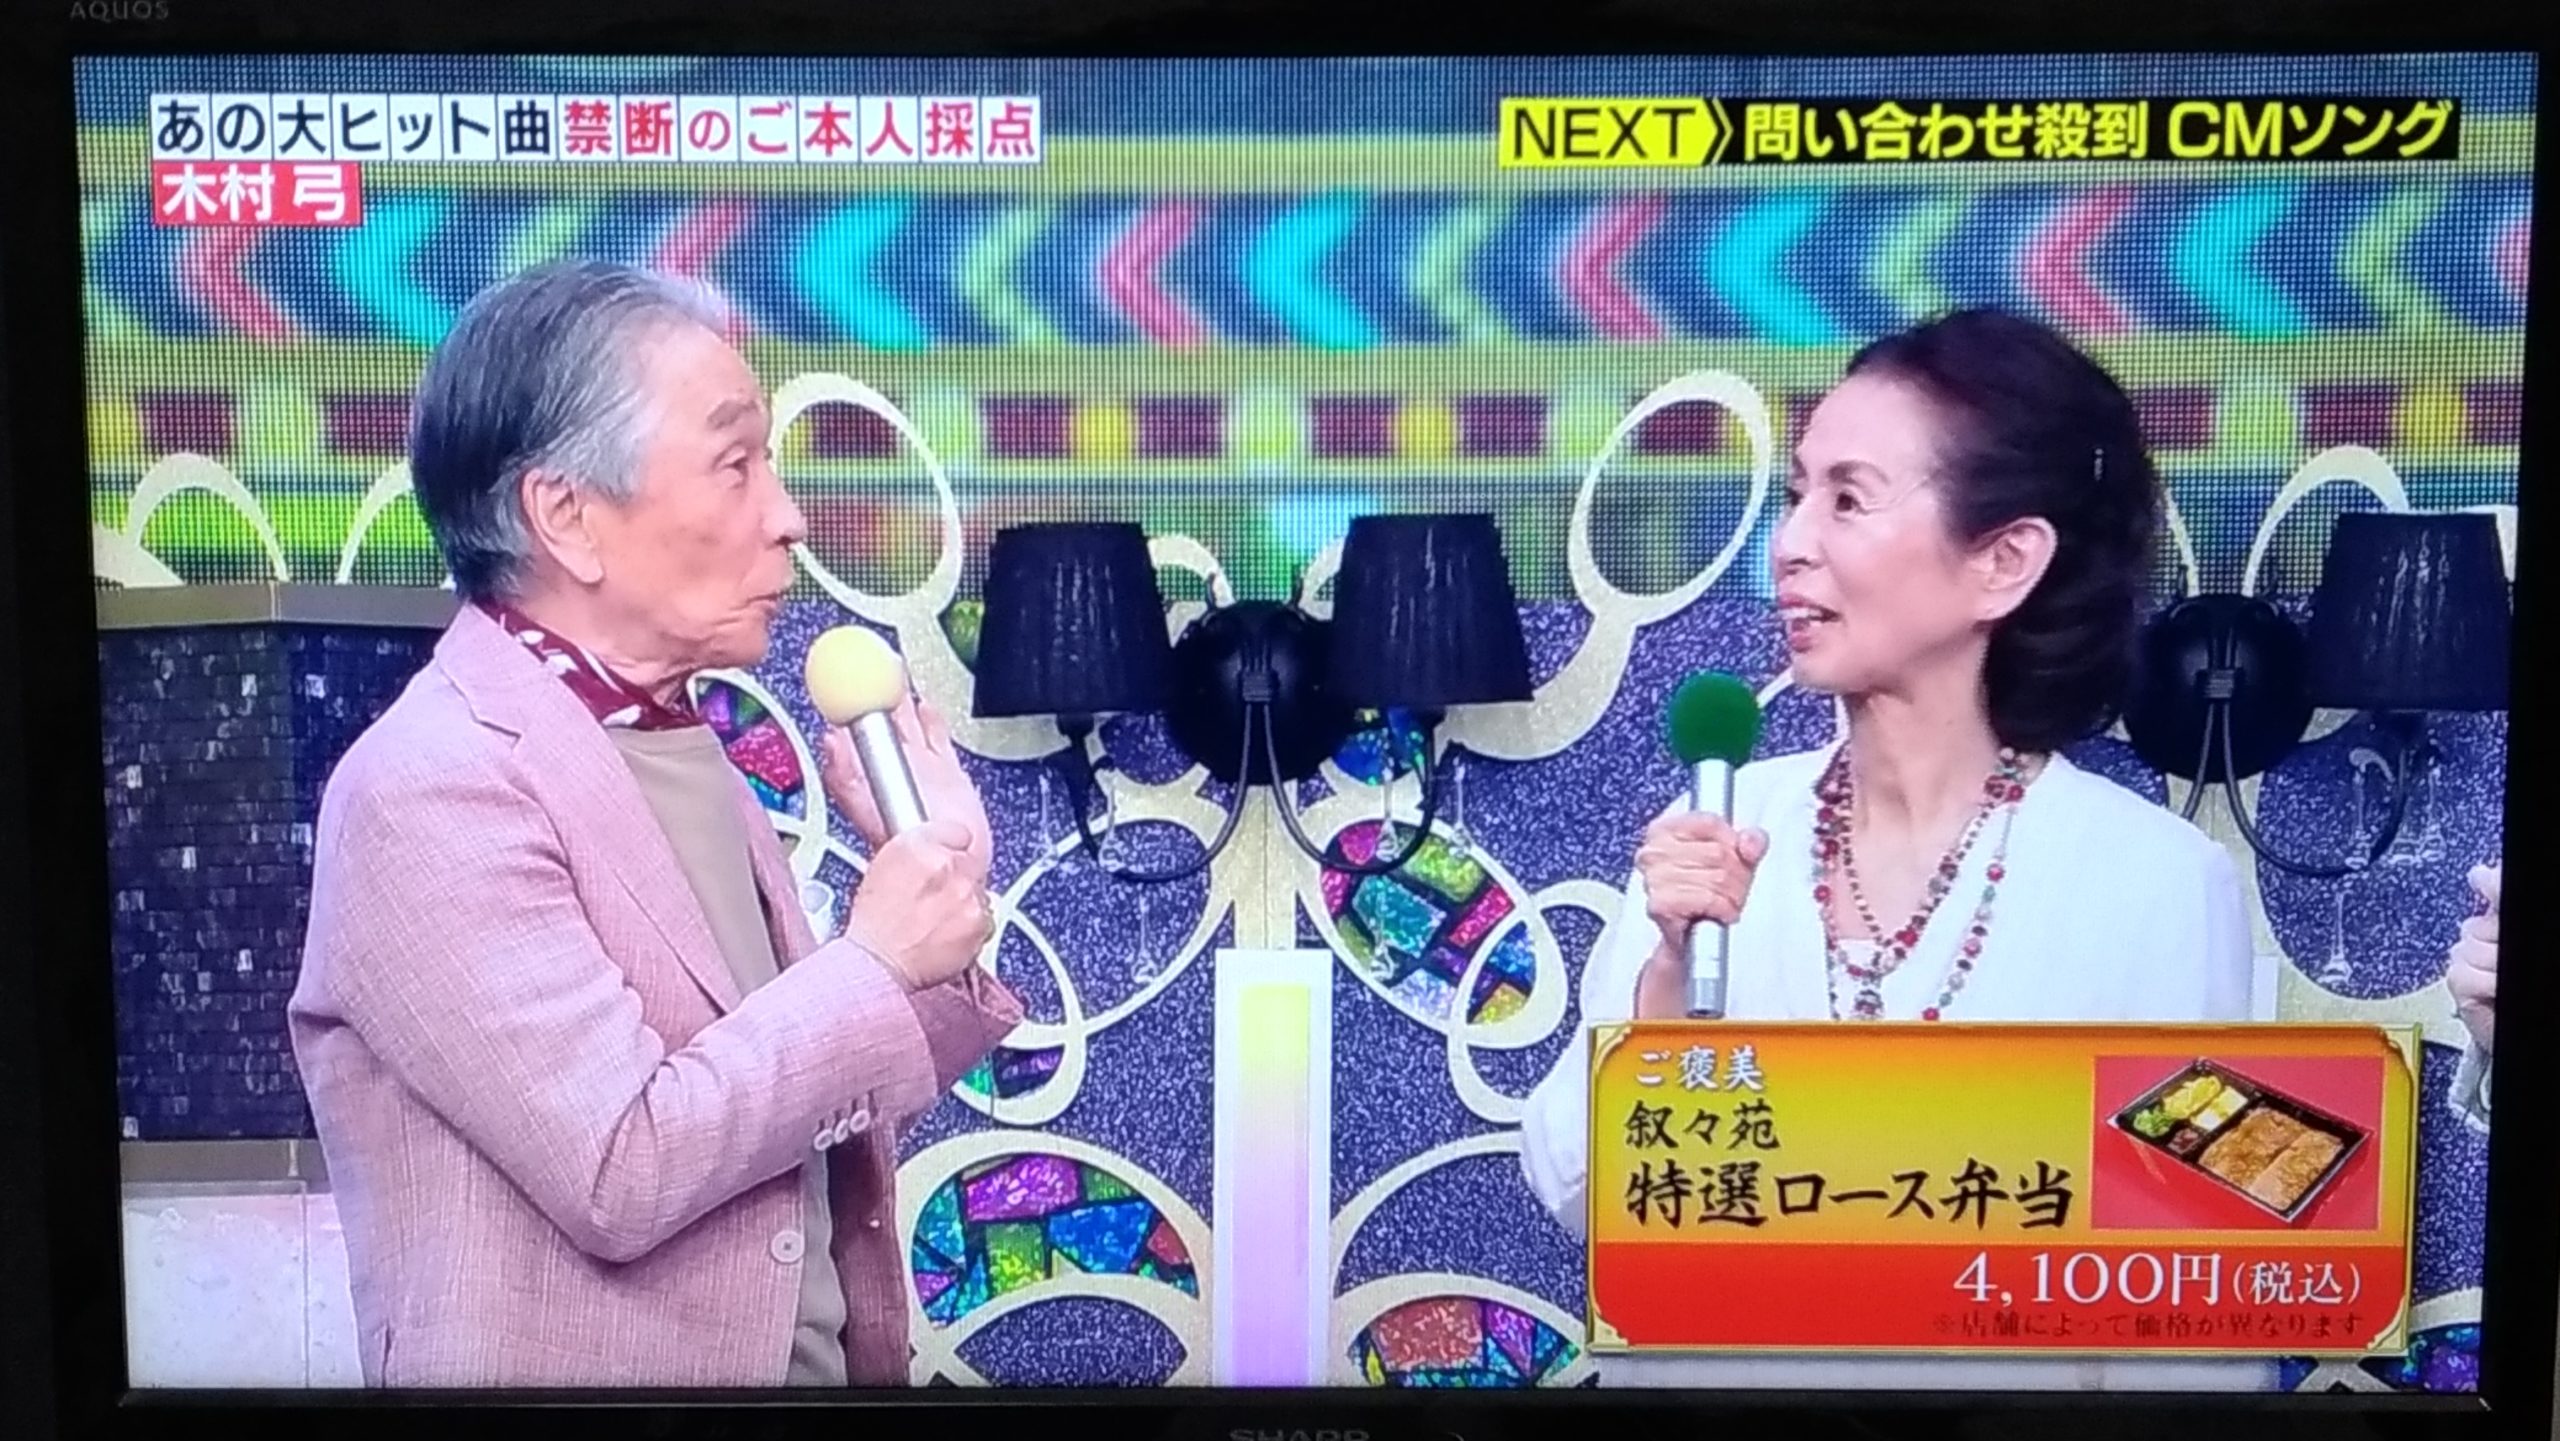 年齢 木村 弓 日本語が話せない外国人女性が歌う、木村弓の「いつも何度でも」に心癒された